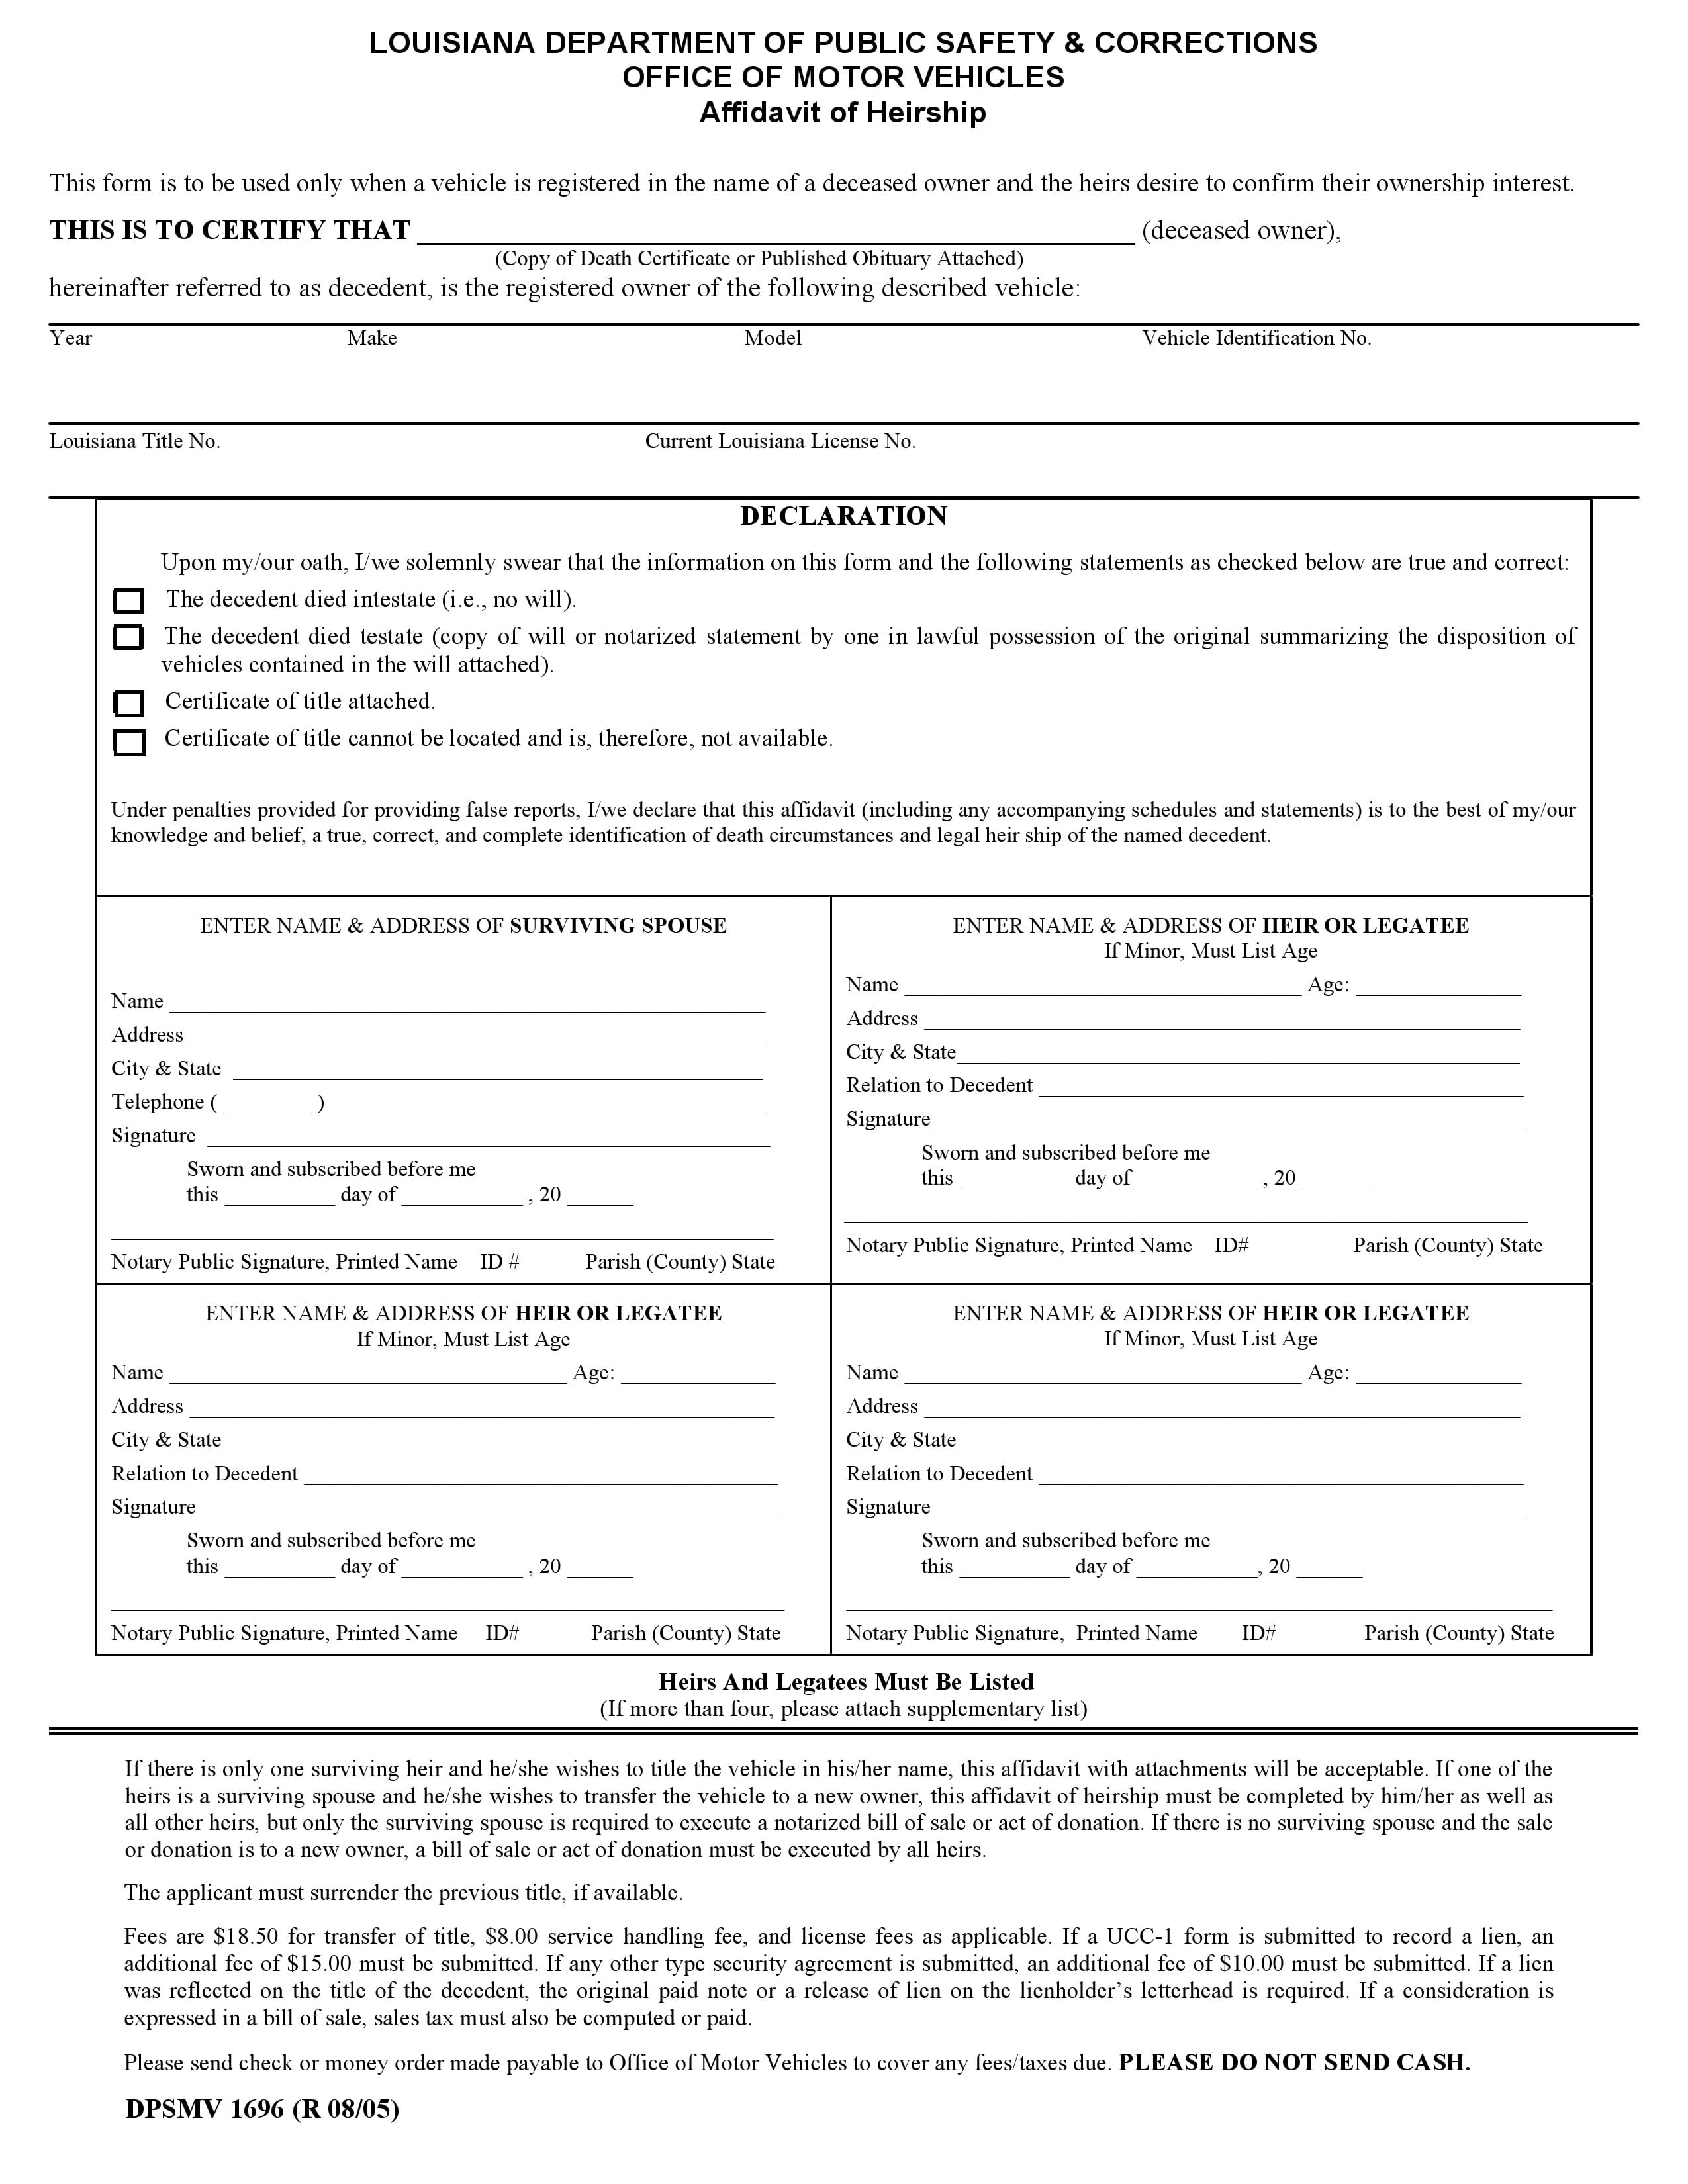 Louisiana Affidavit Of Heirship Vehicle Only Form 1696